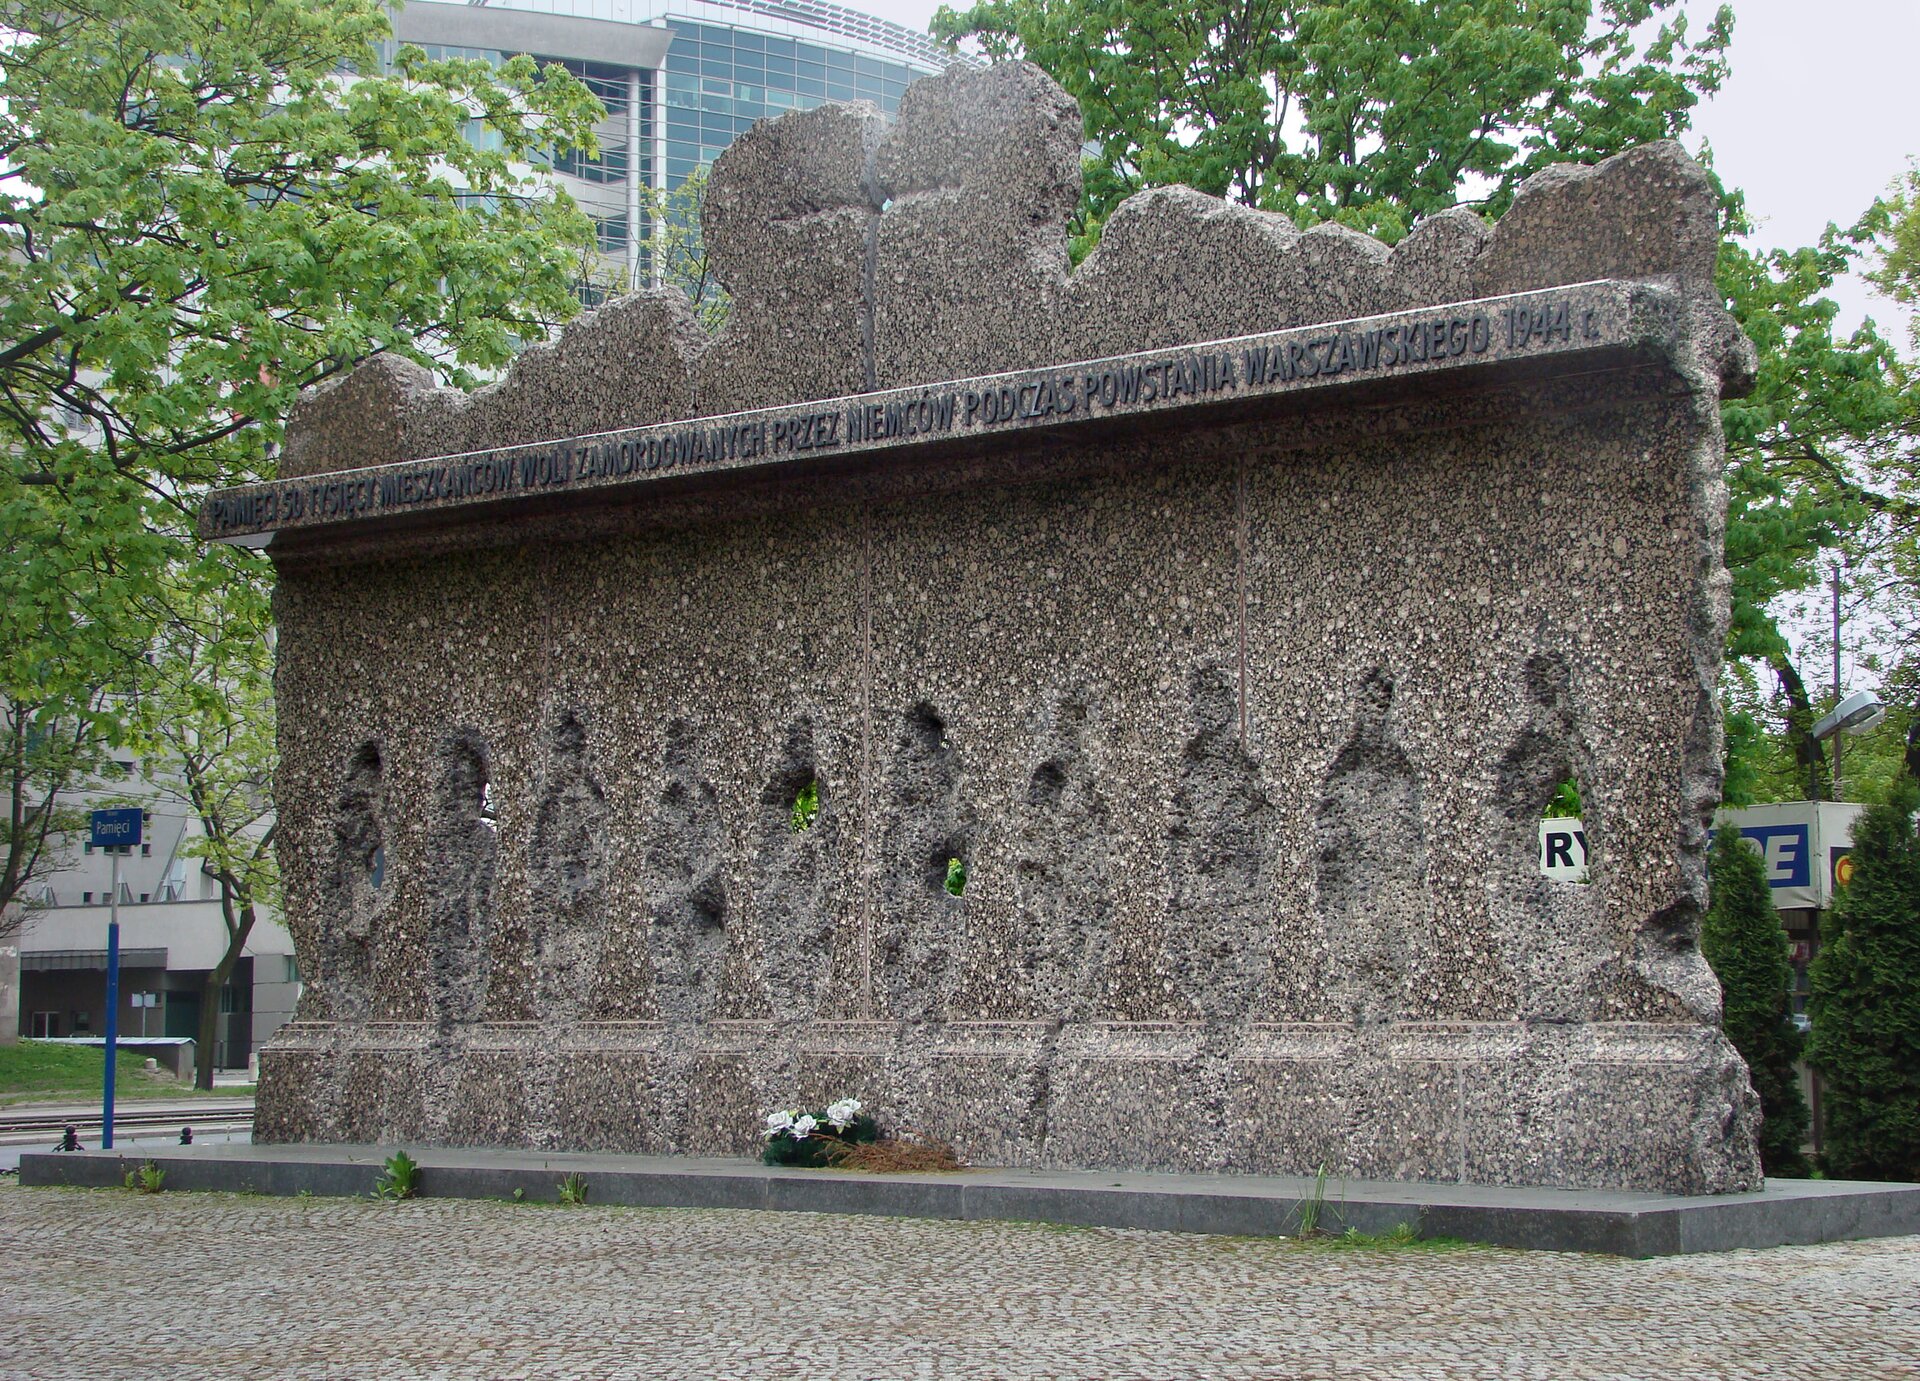 Zdjęcie przedstawia pomnik stworzony poprzez wyżłobienie dziur w kształcie ludzi w kamiennej skale. Górę pomnika wieńczy wyszczerbiony, nierówny mur.